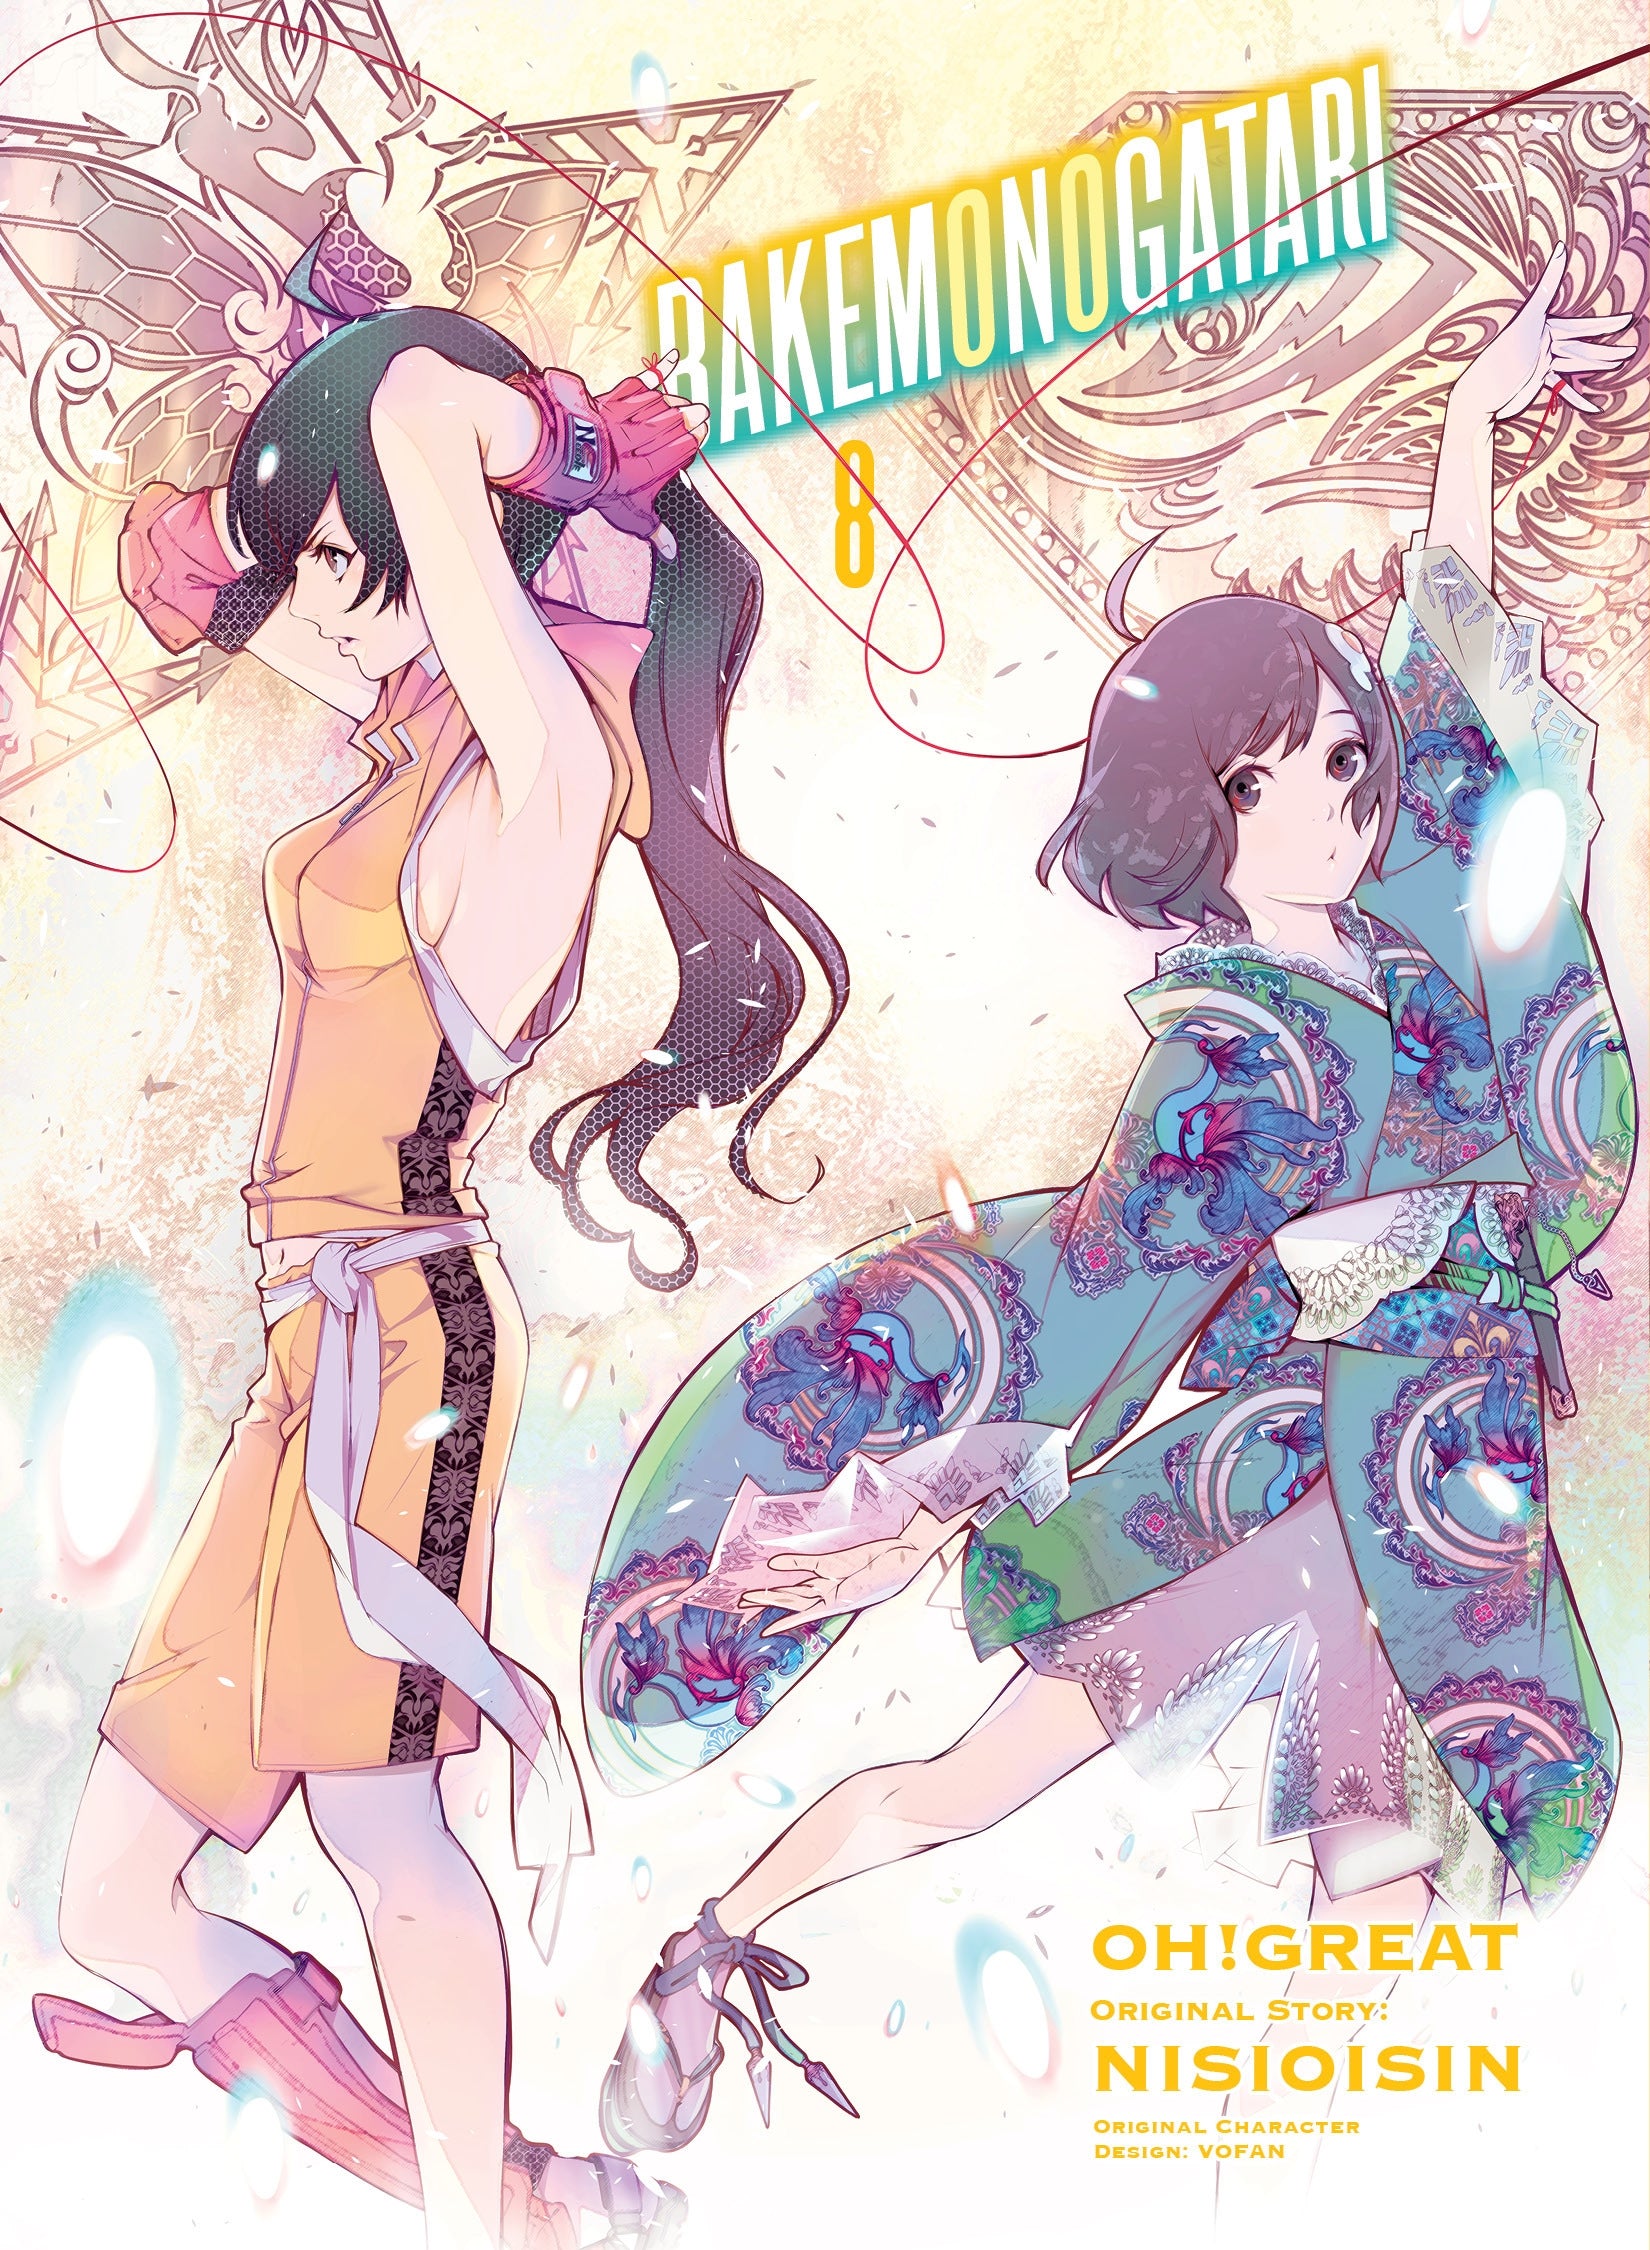 BAKEMONOGATARI (manga), Vol. 8